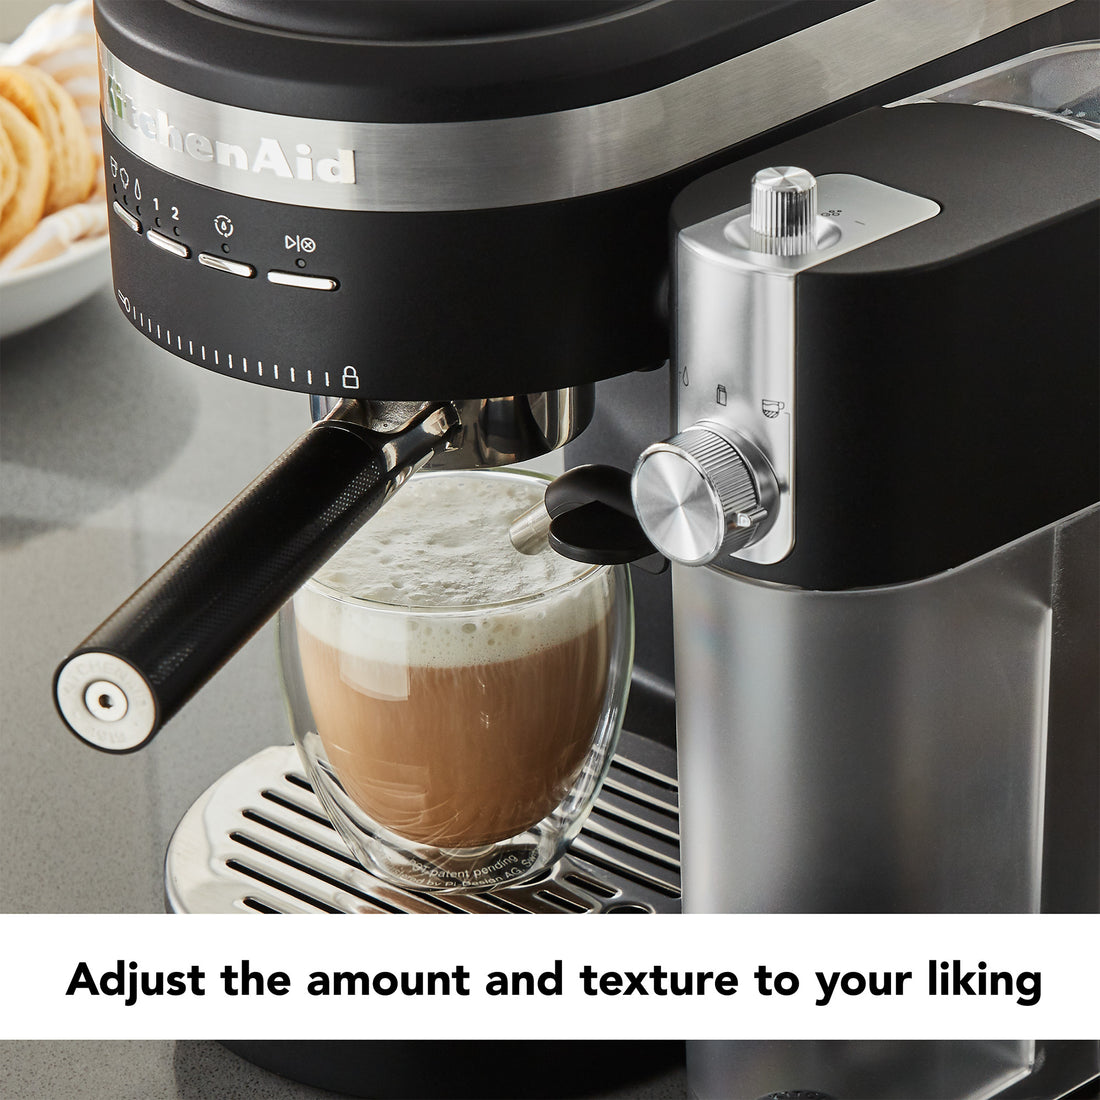 KitchenAid Espresso Machine & Milk Frother, Black Matte